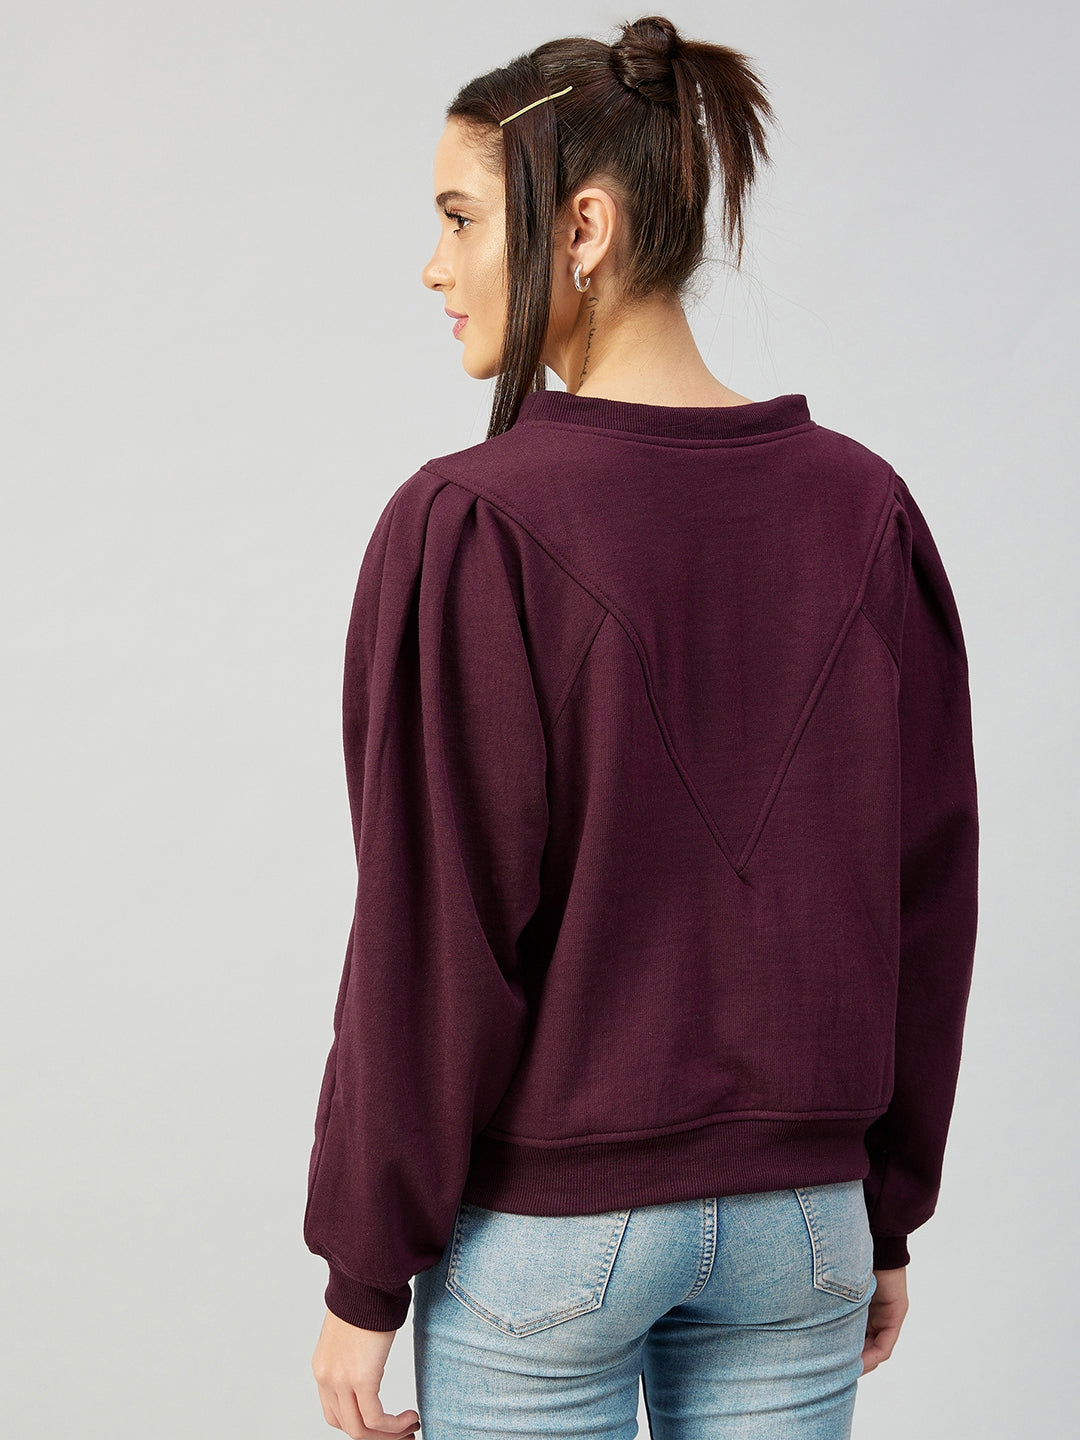 Athena Women Burgundy Fleece Sweatshirt - Athena Lifestyle